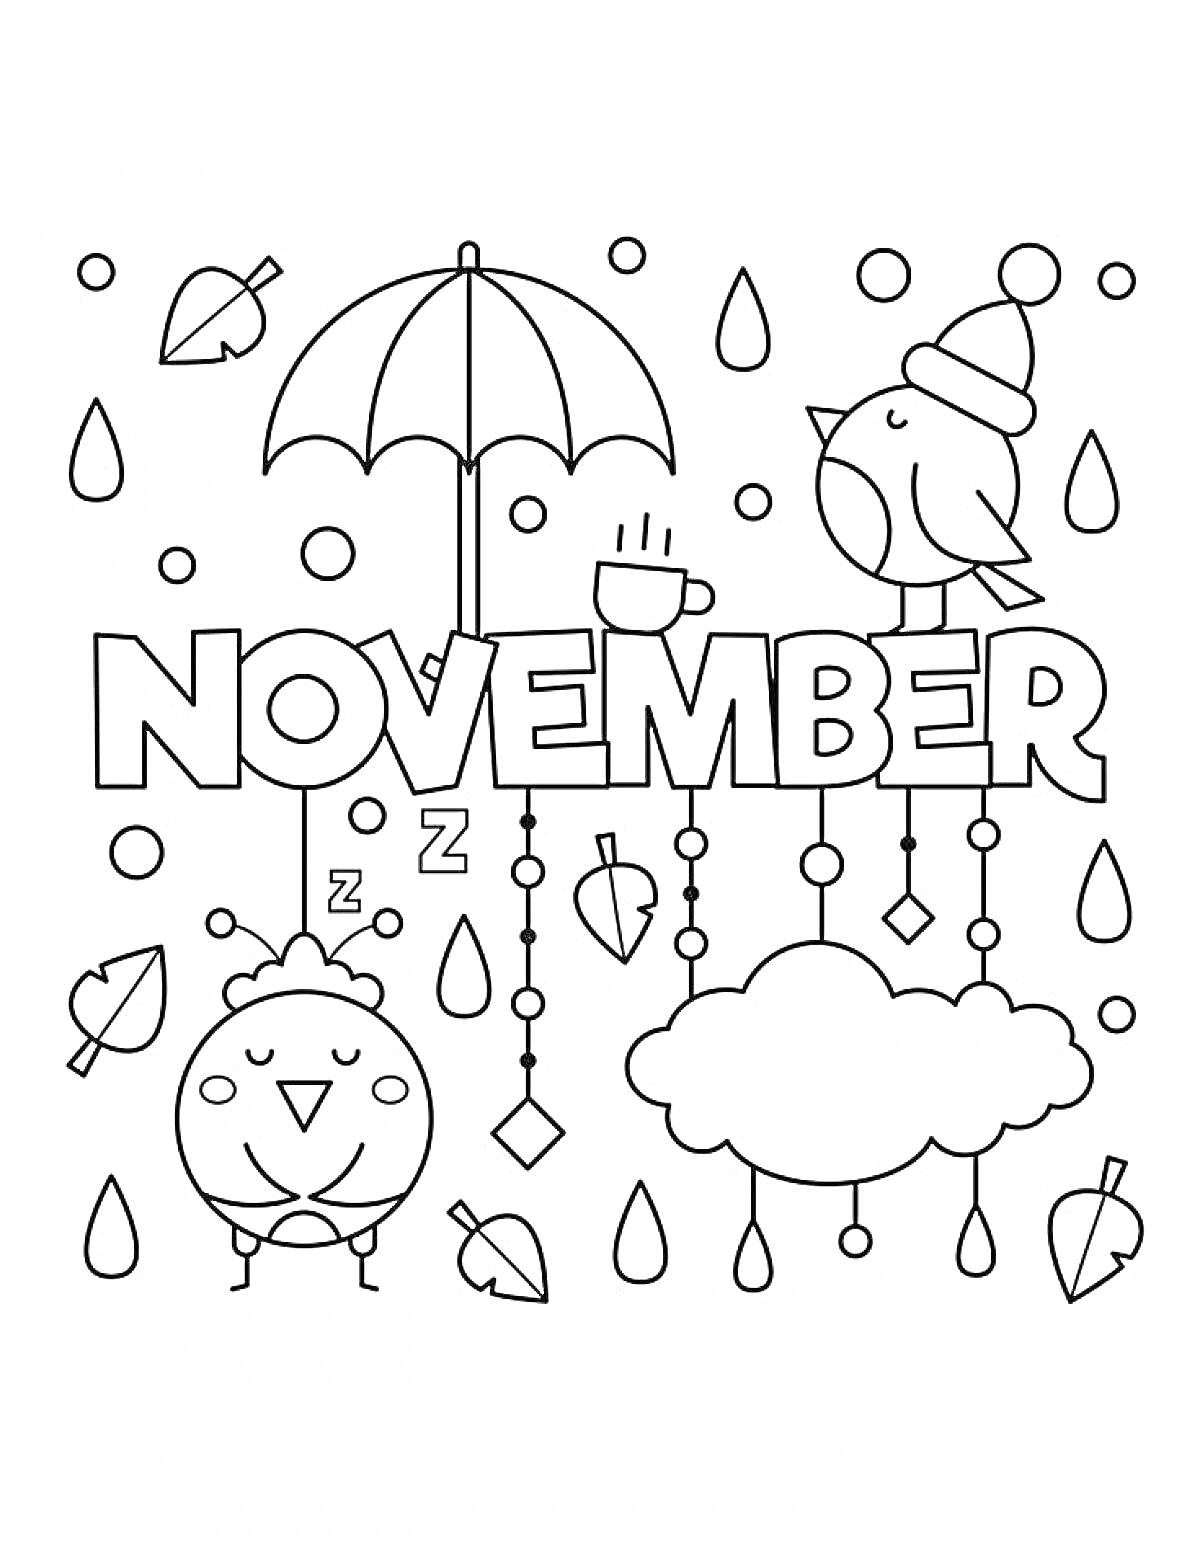 Раскраска Ноябрь с двумя птицами (спящей и бодрствующей), зонтом, облаком, кружкой кофе, каплями дождя и листьями.